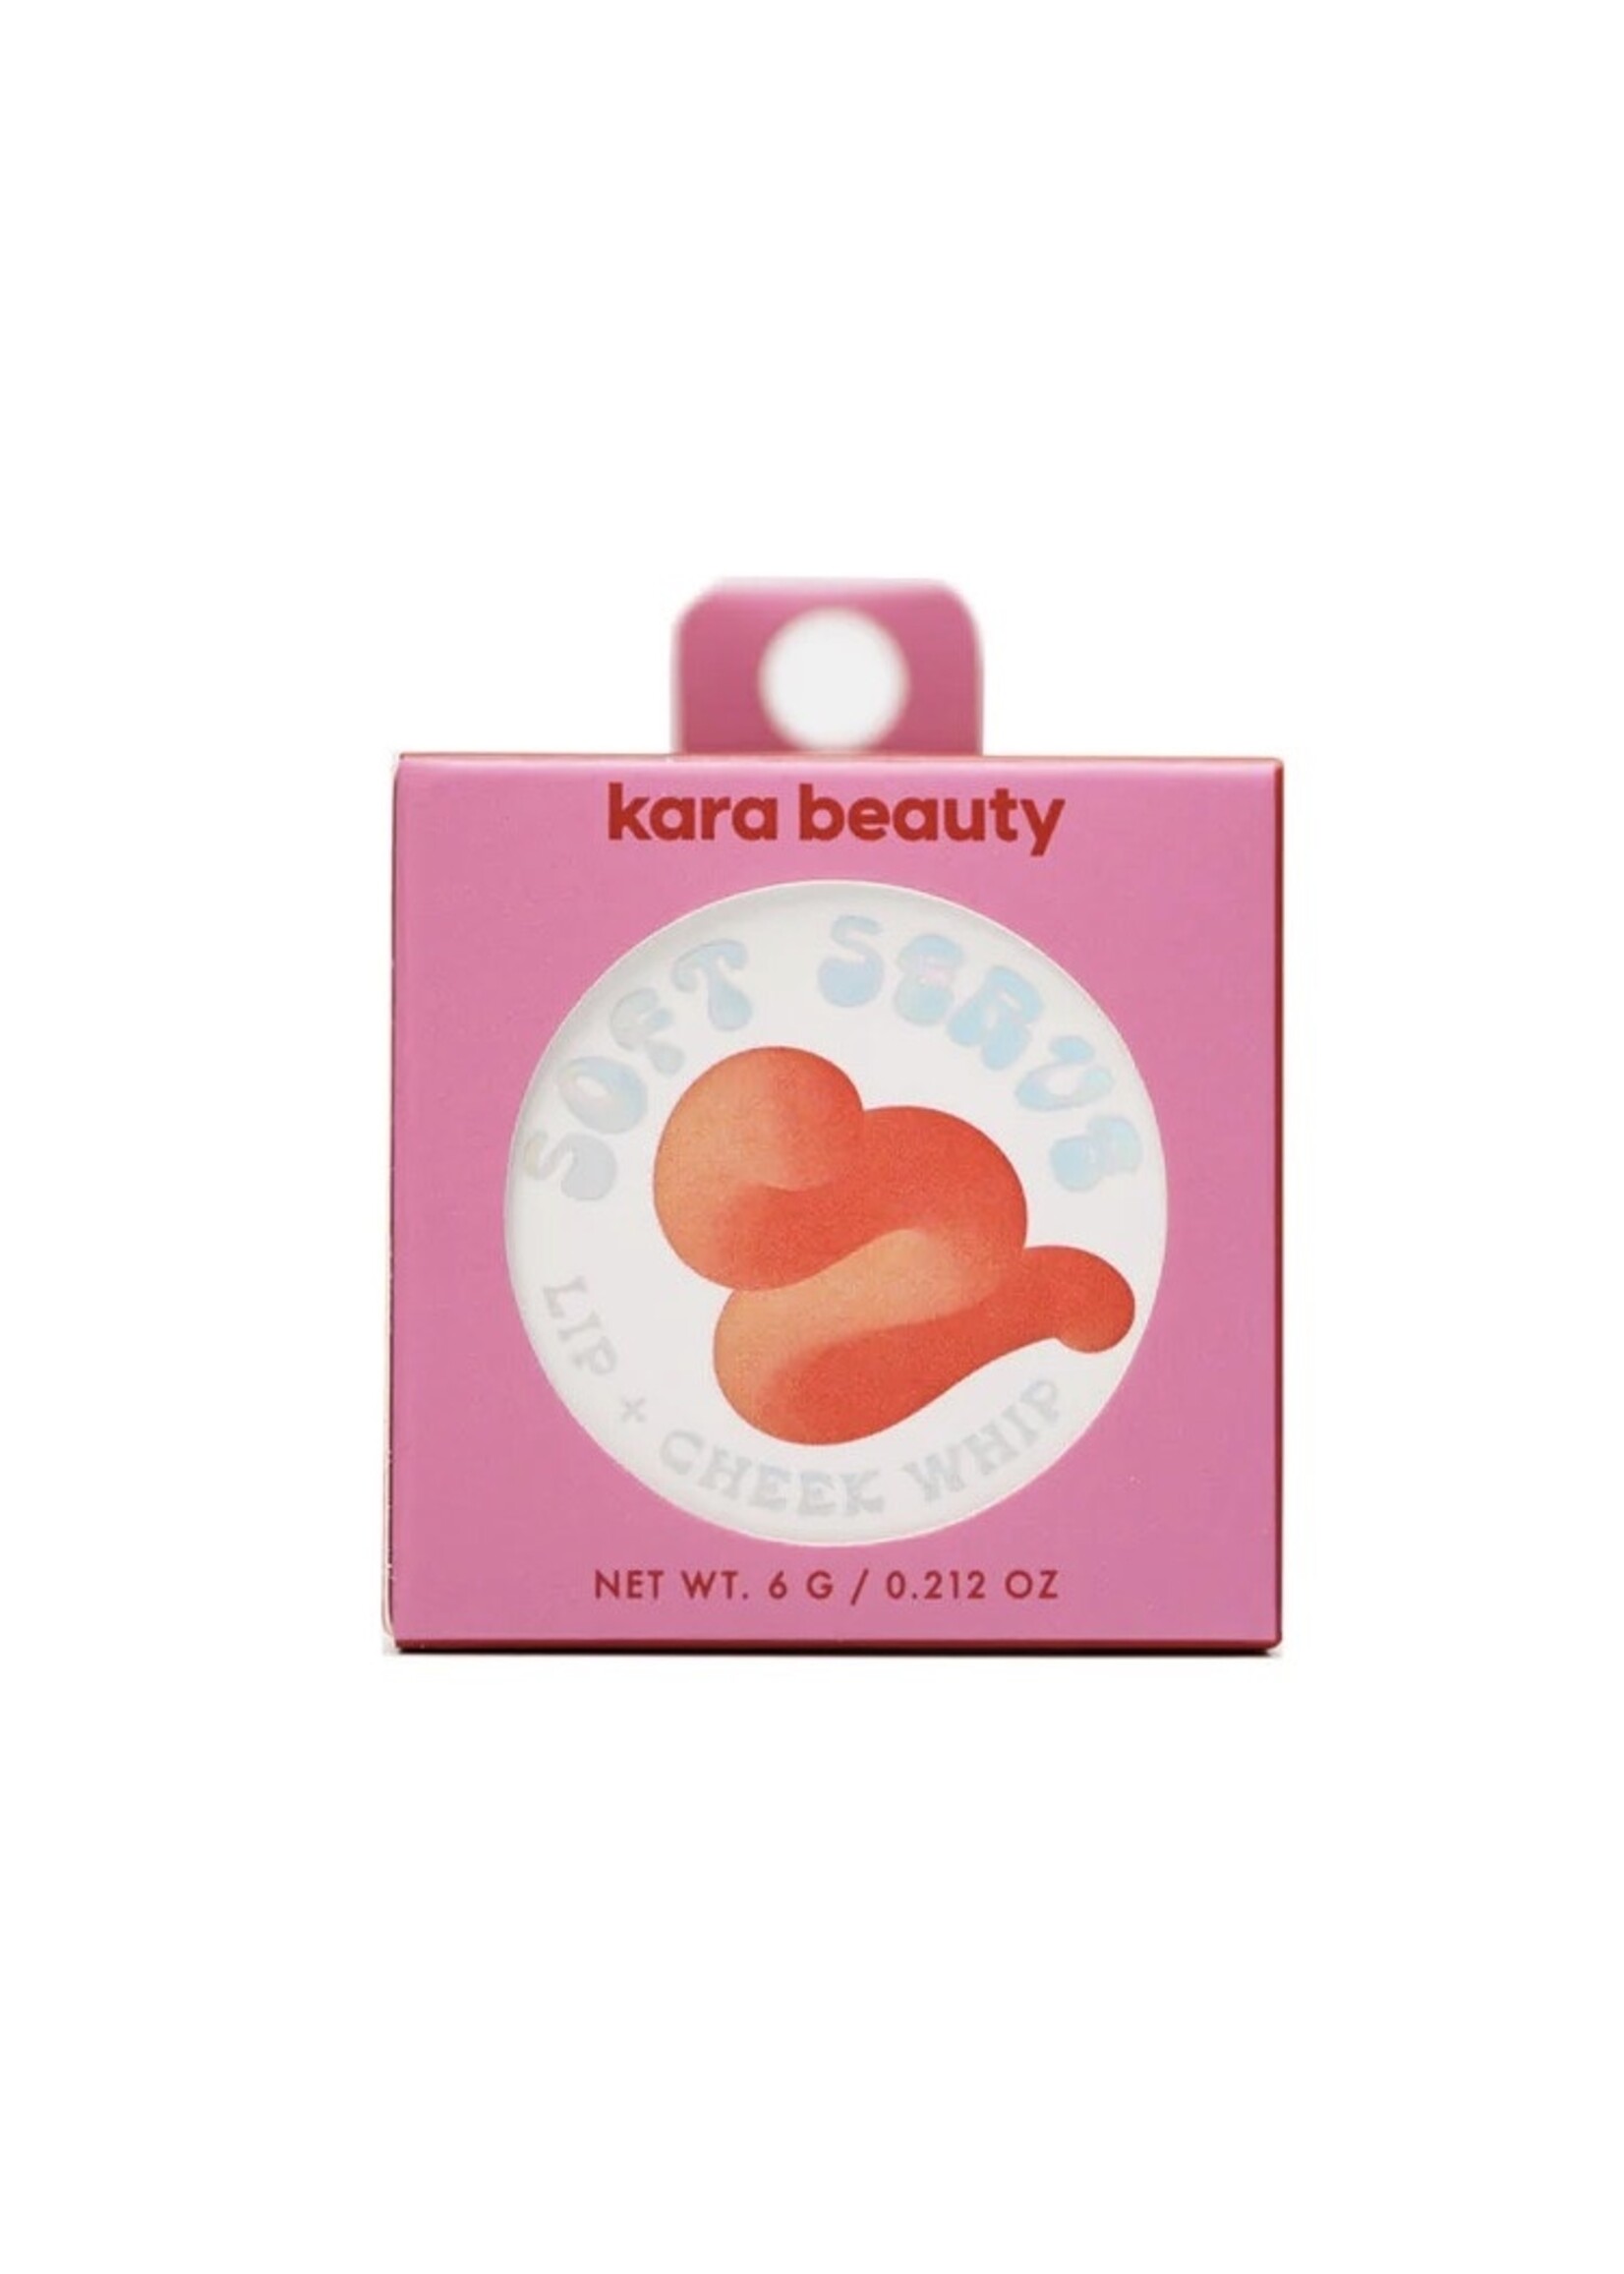 Kara Beauty Crèmes fouettées pour les lèvres et joues "Soft Serve" par Kara Beauty